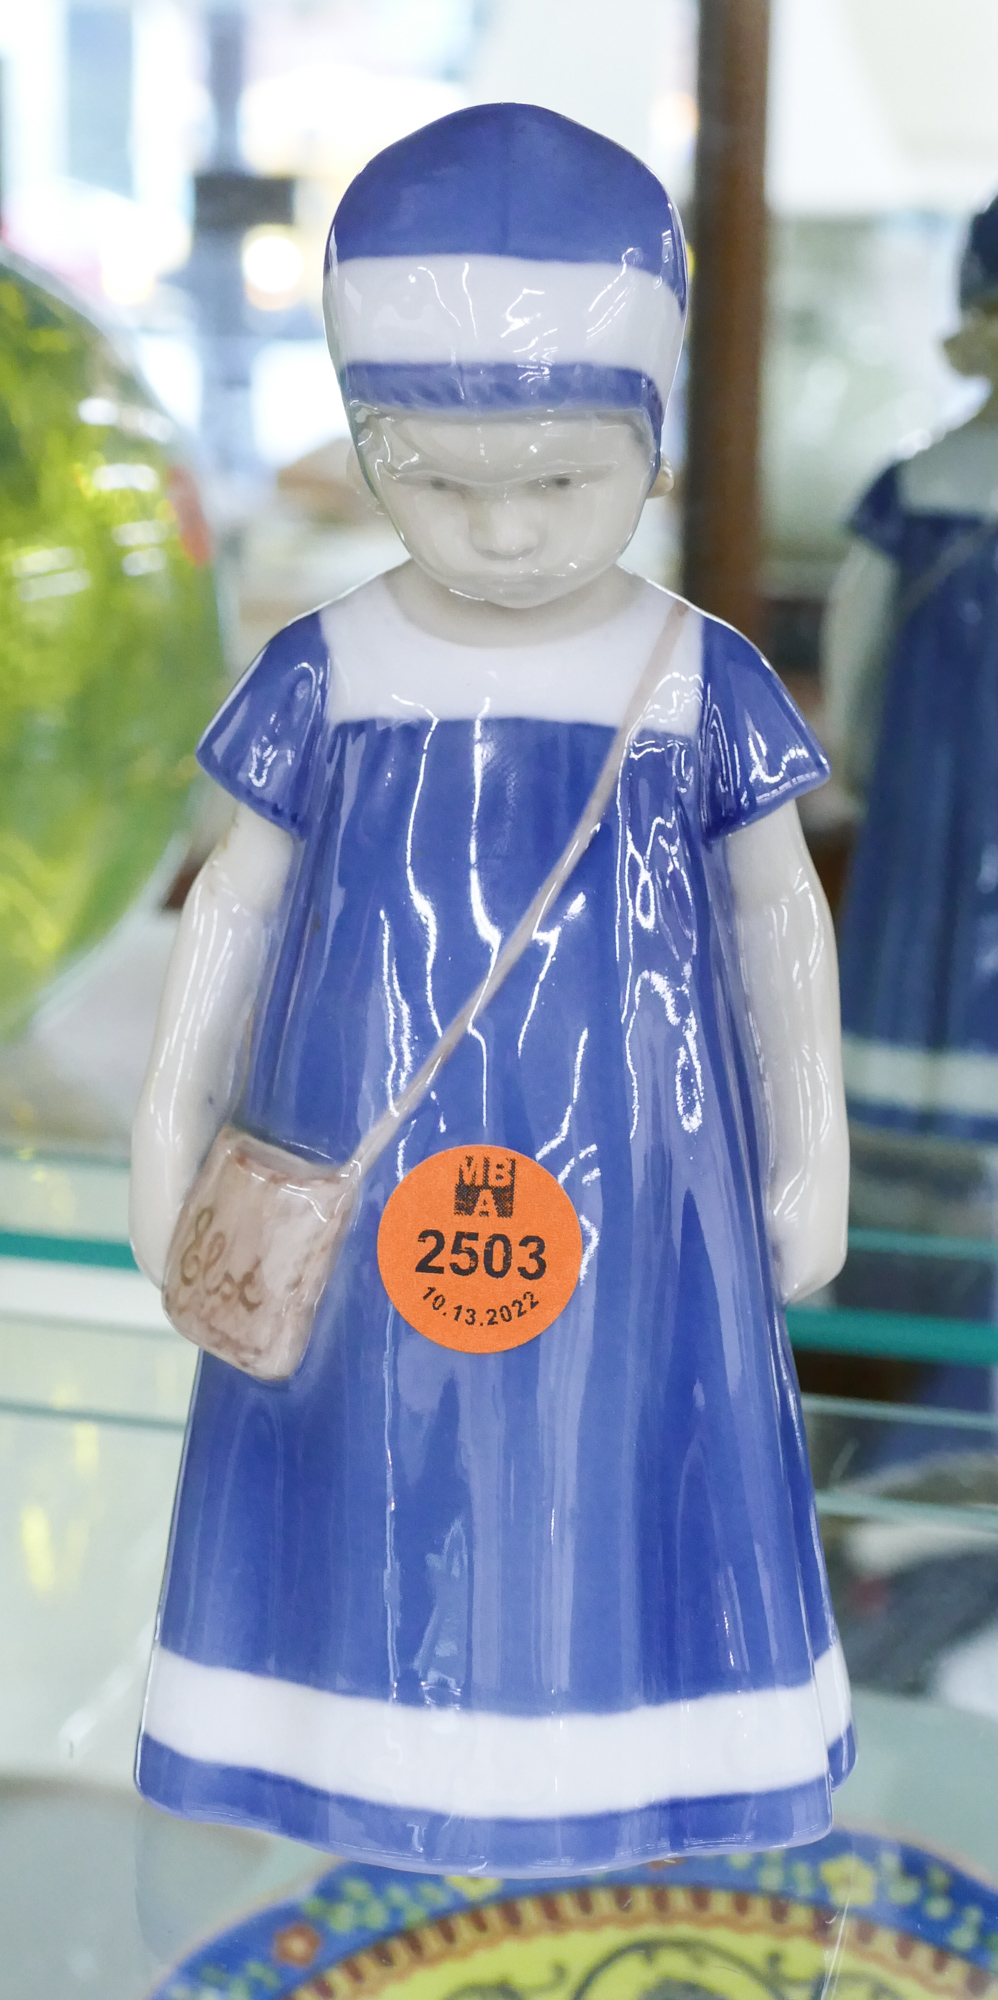 B&G 1574 Porcelain Girl Figure- 6.5